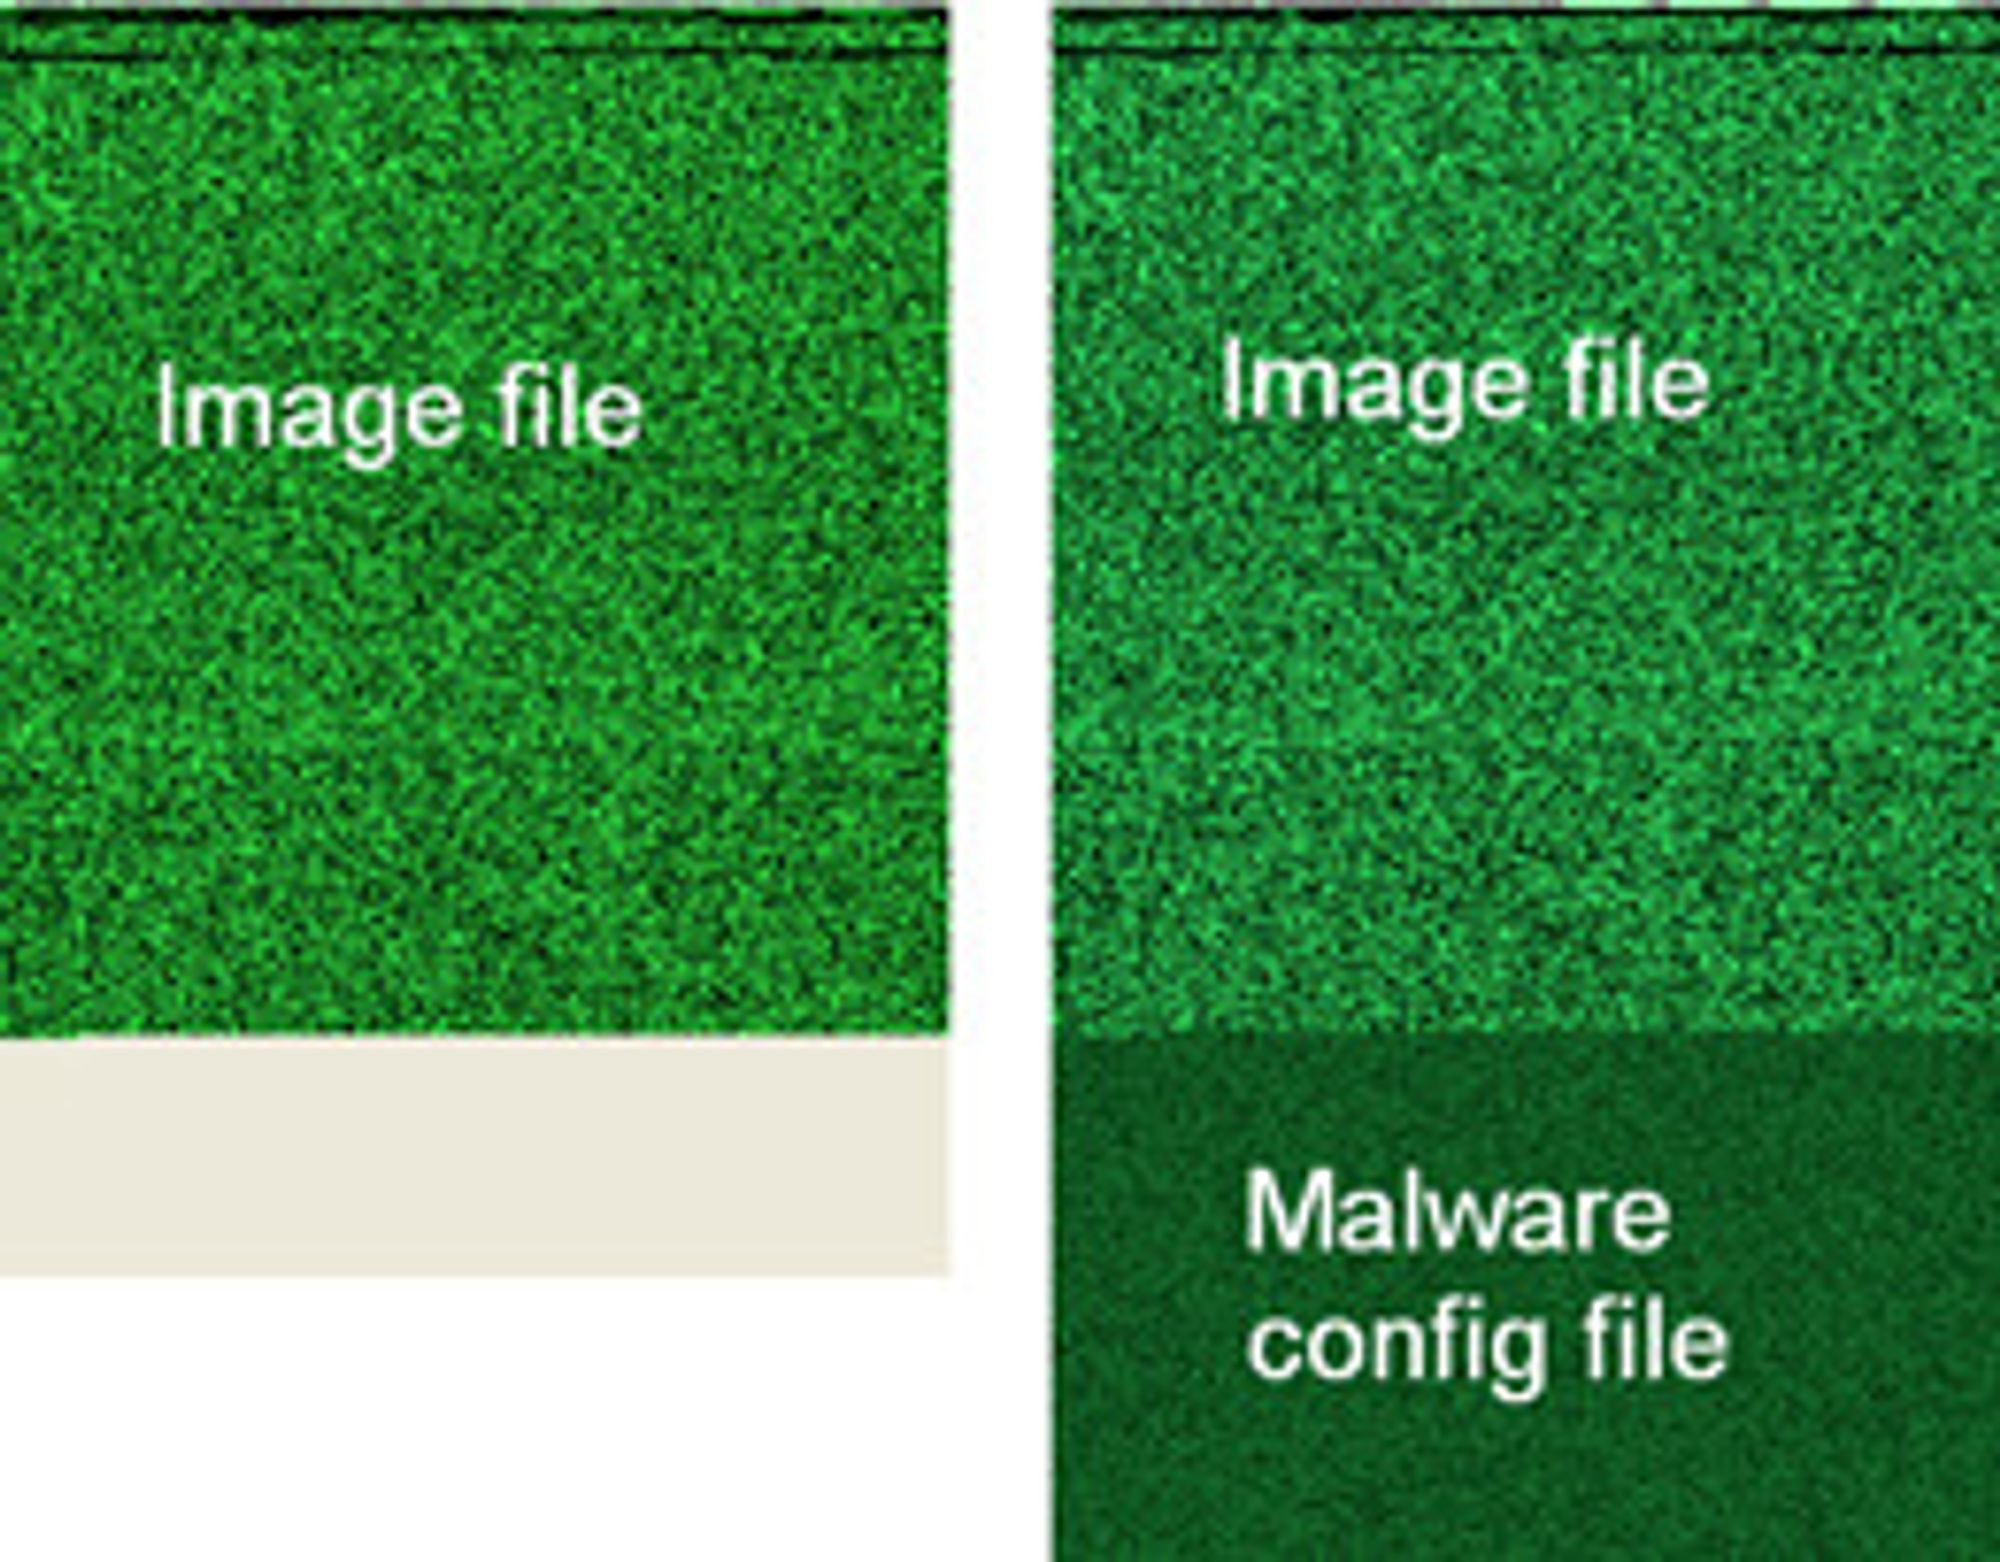 Ved å sammenligne originalbildet med det manipulerte bildet fant forskerne steganografisk kode lagt til på slutten av bildefilen.